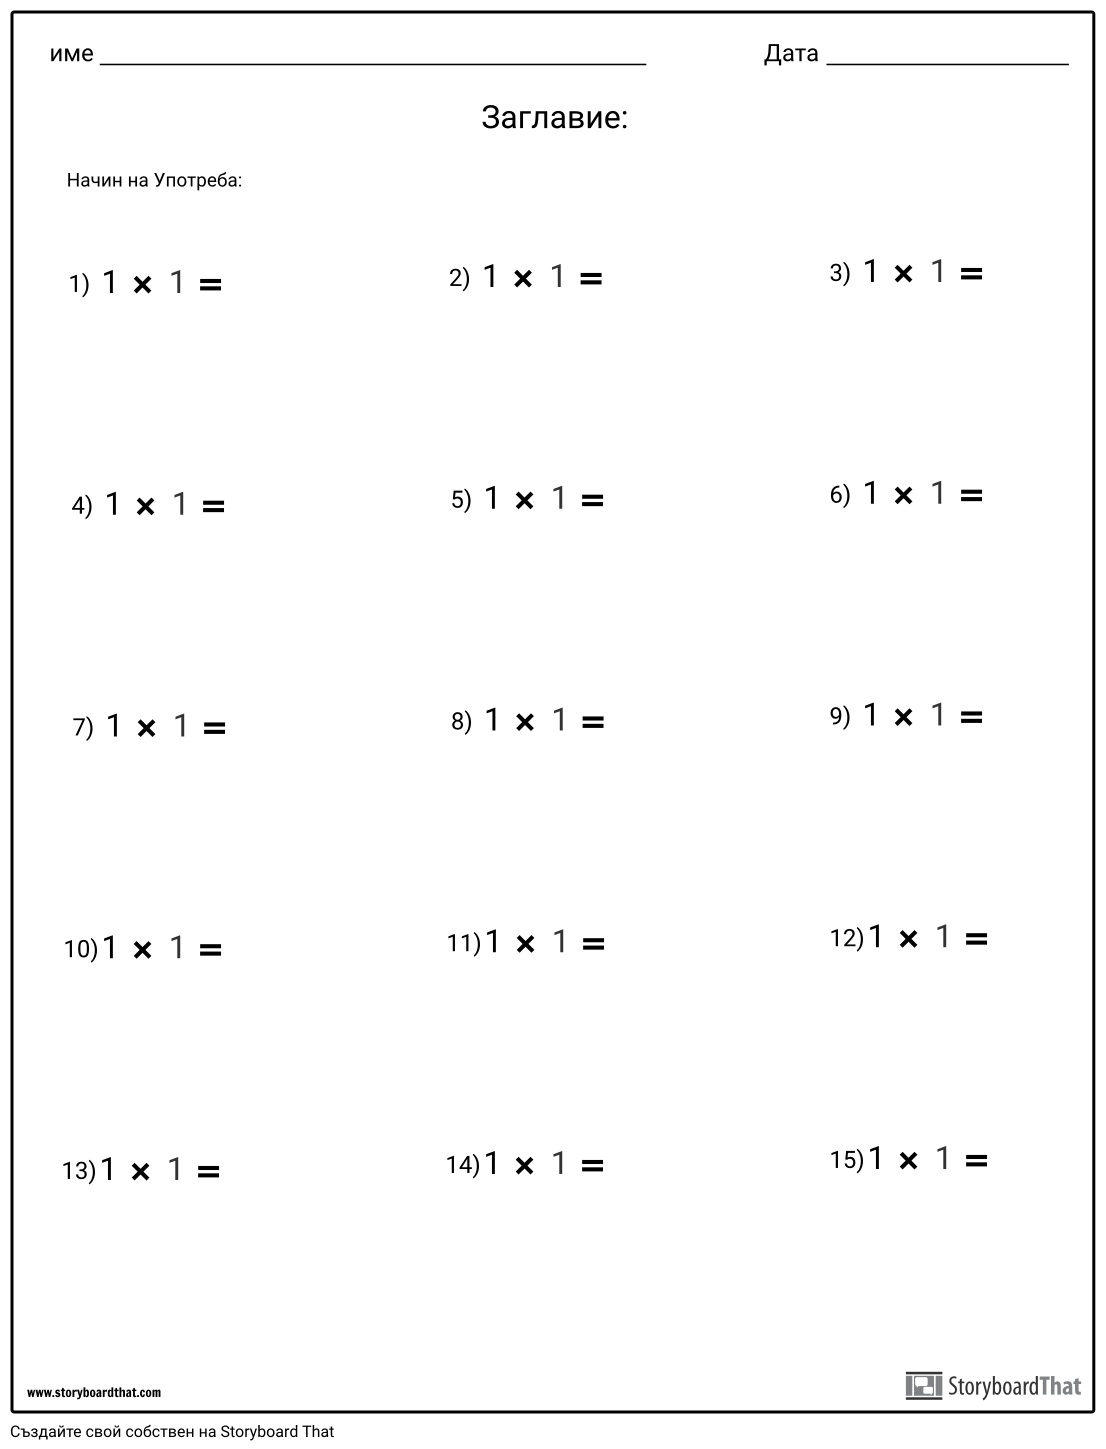 matematika 4 klass primeri na umnozhenie i delenie